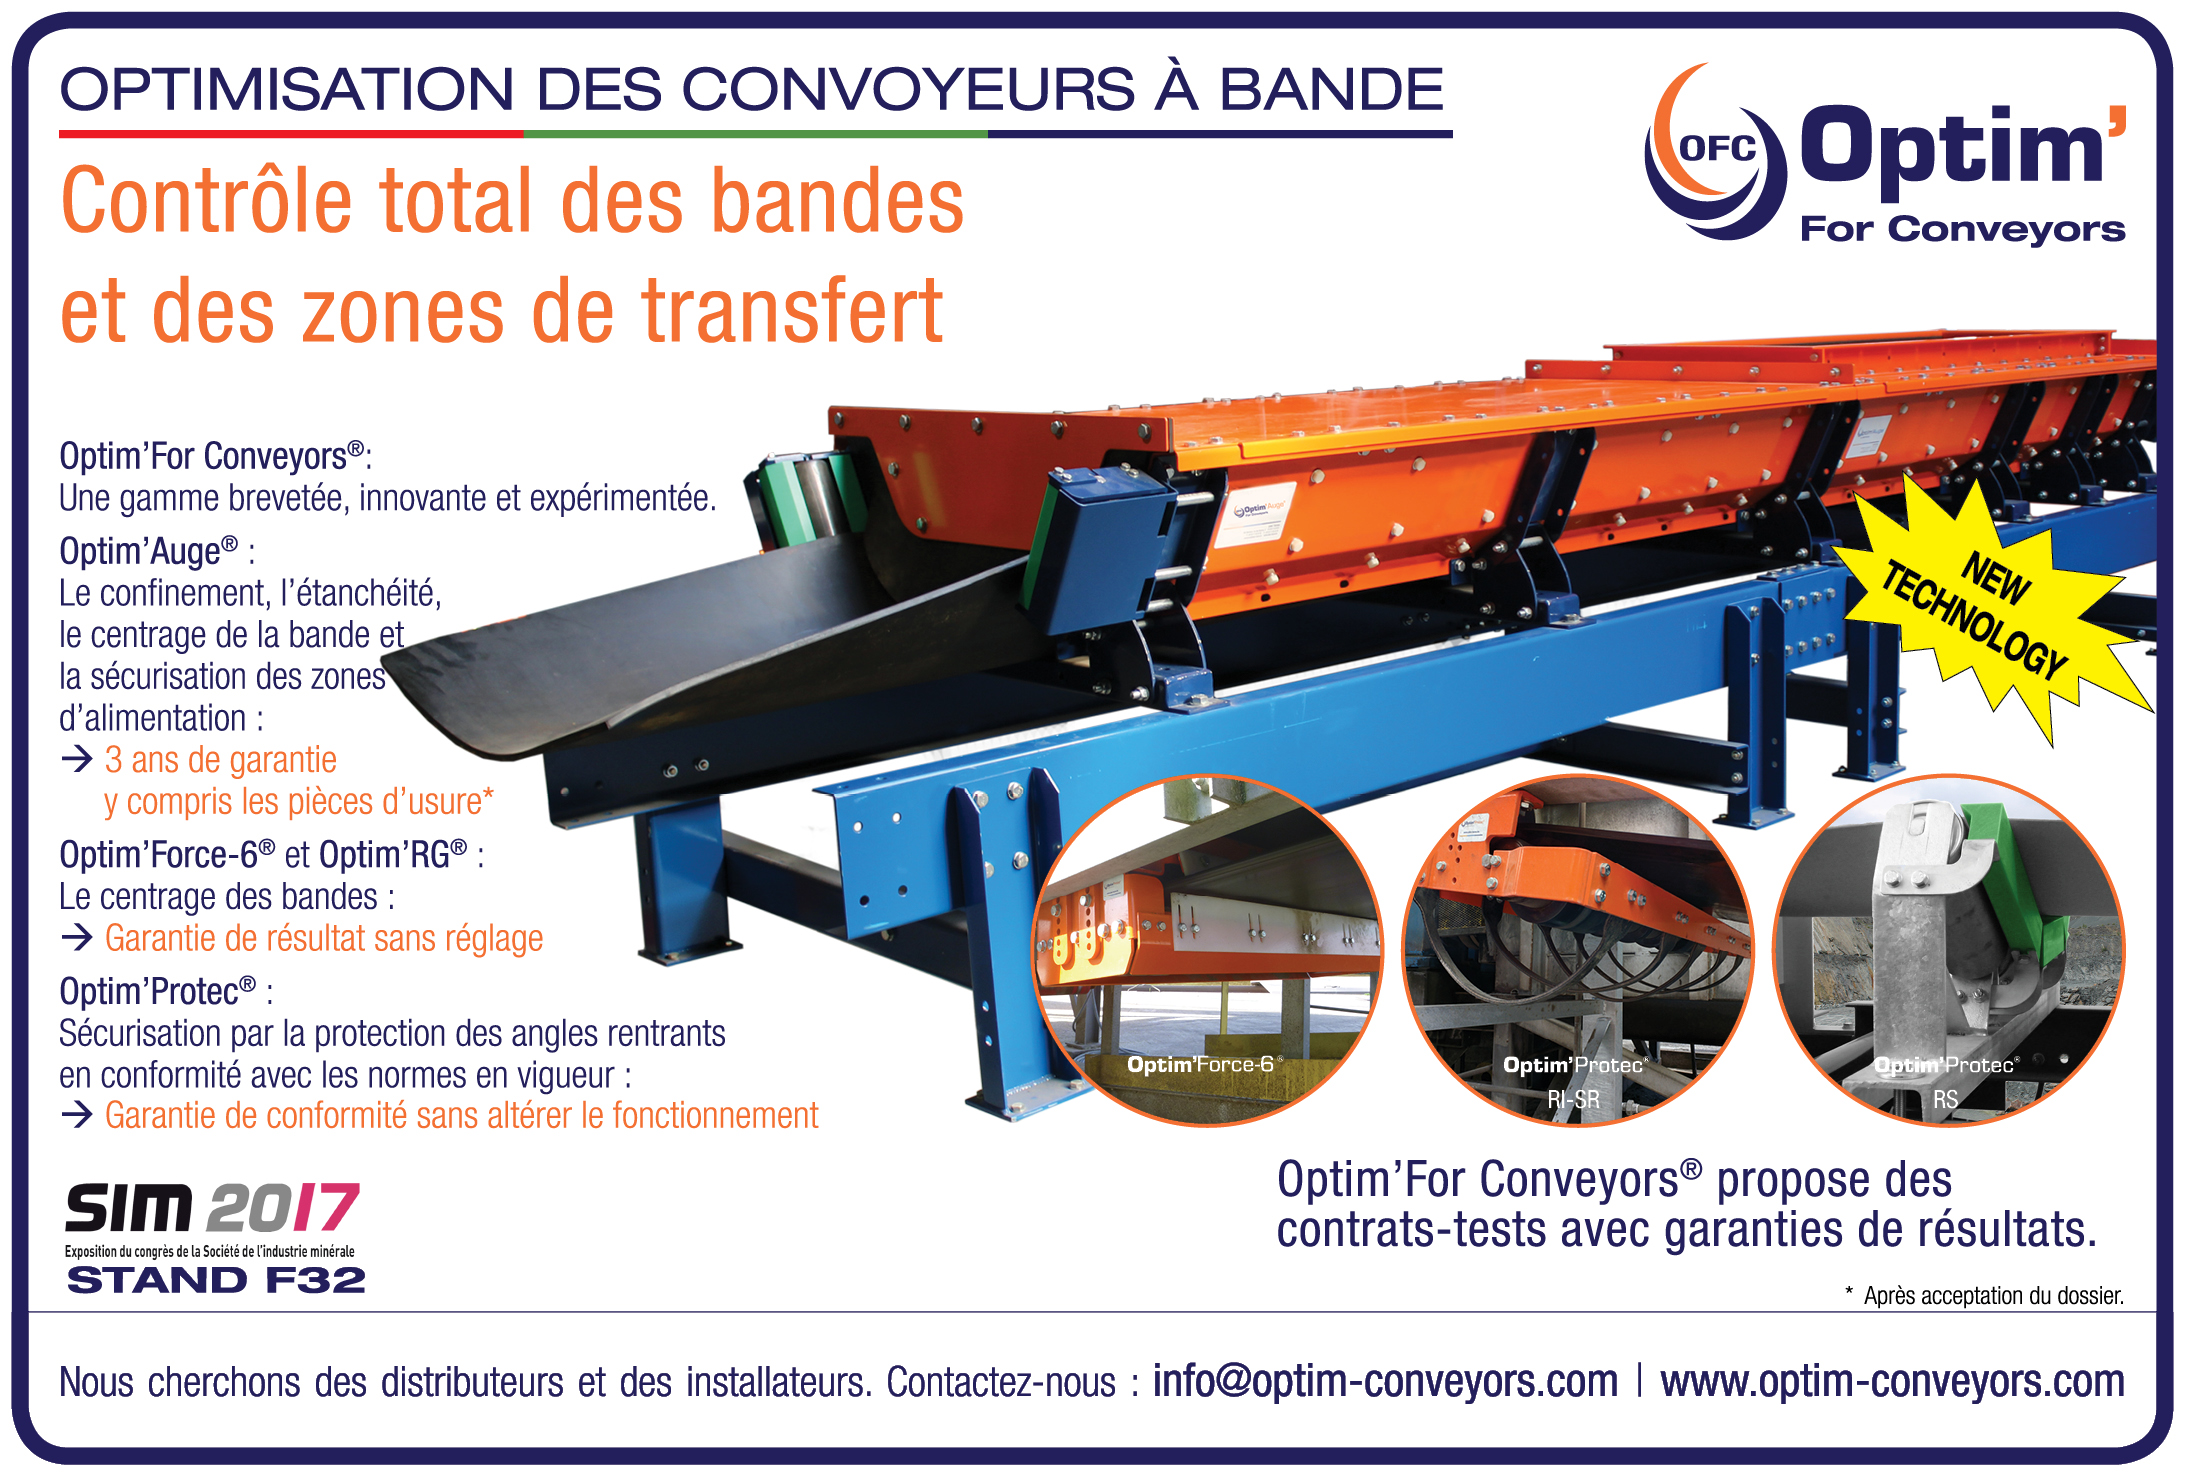 Publicité Pour notre gamme de Optim'For Conveyors dans Mines et Carrières